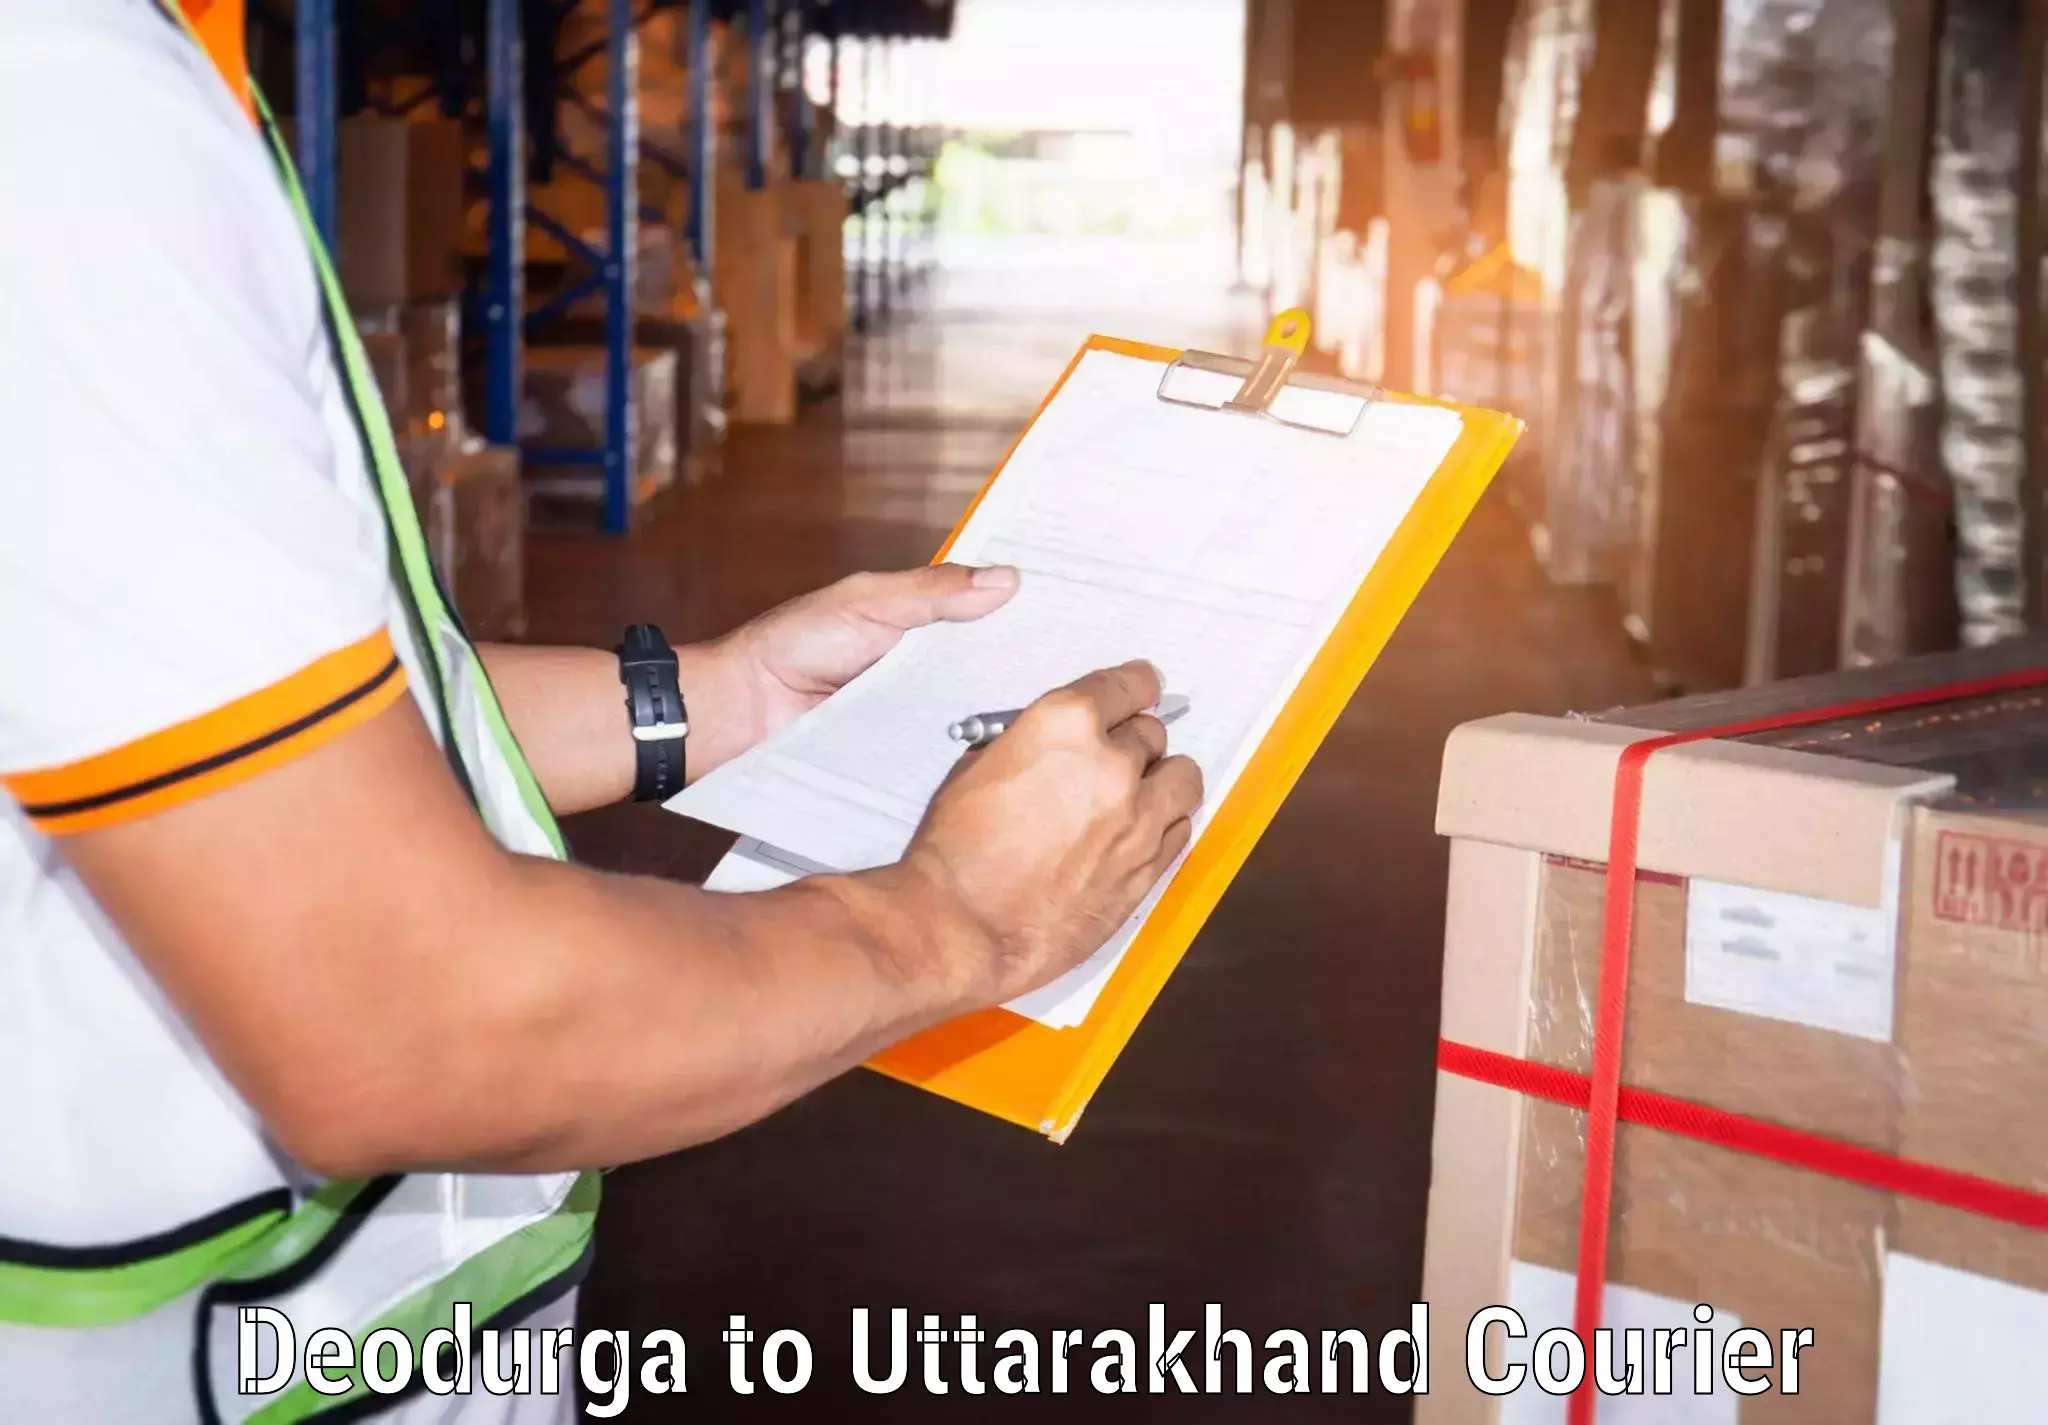 Urban courier service Deodurga to Kashipur